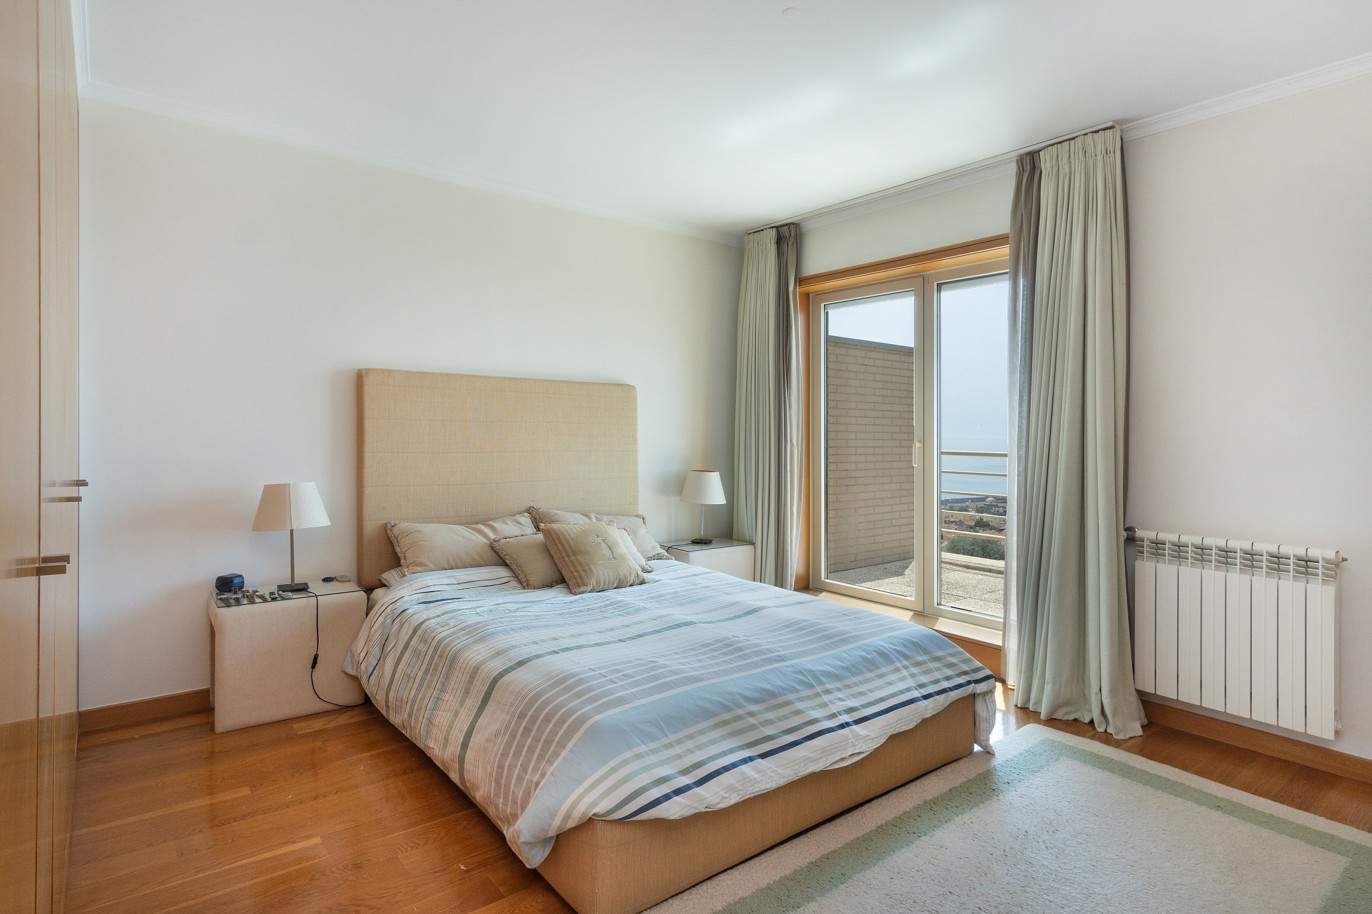 5 bedroom duplex flat with sea views, for sale, Pinhais da Foz, Porto, Portugal_203342